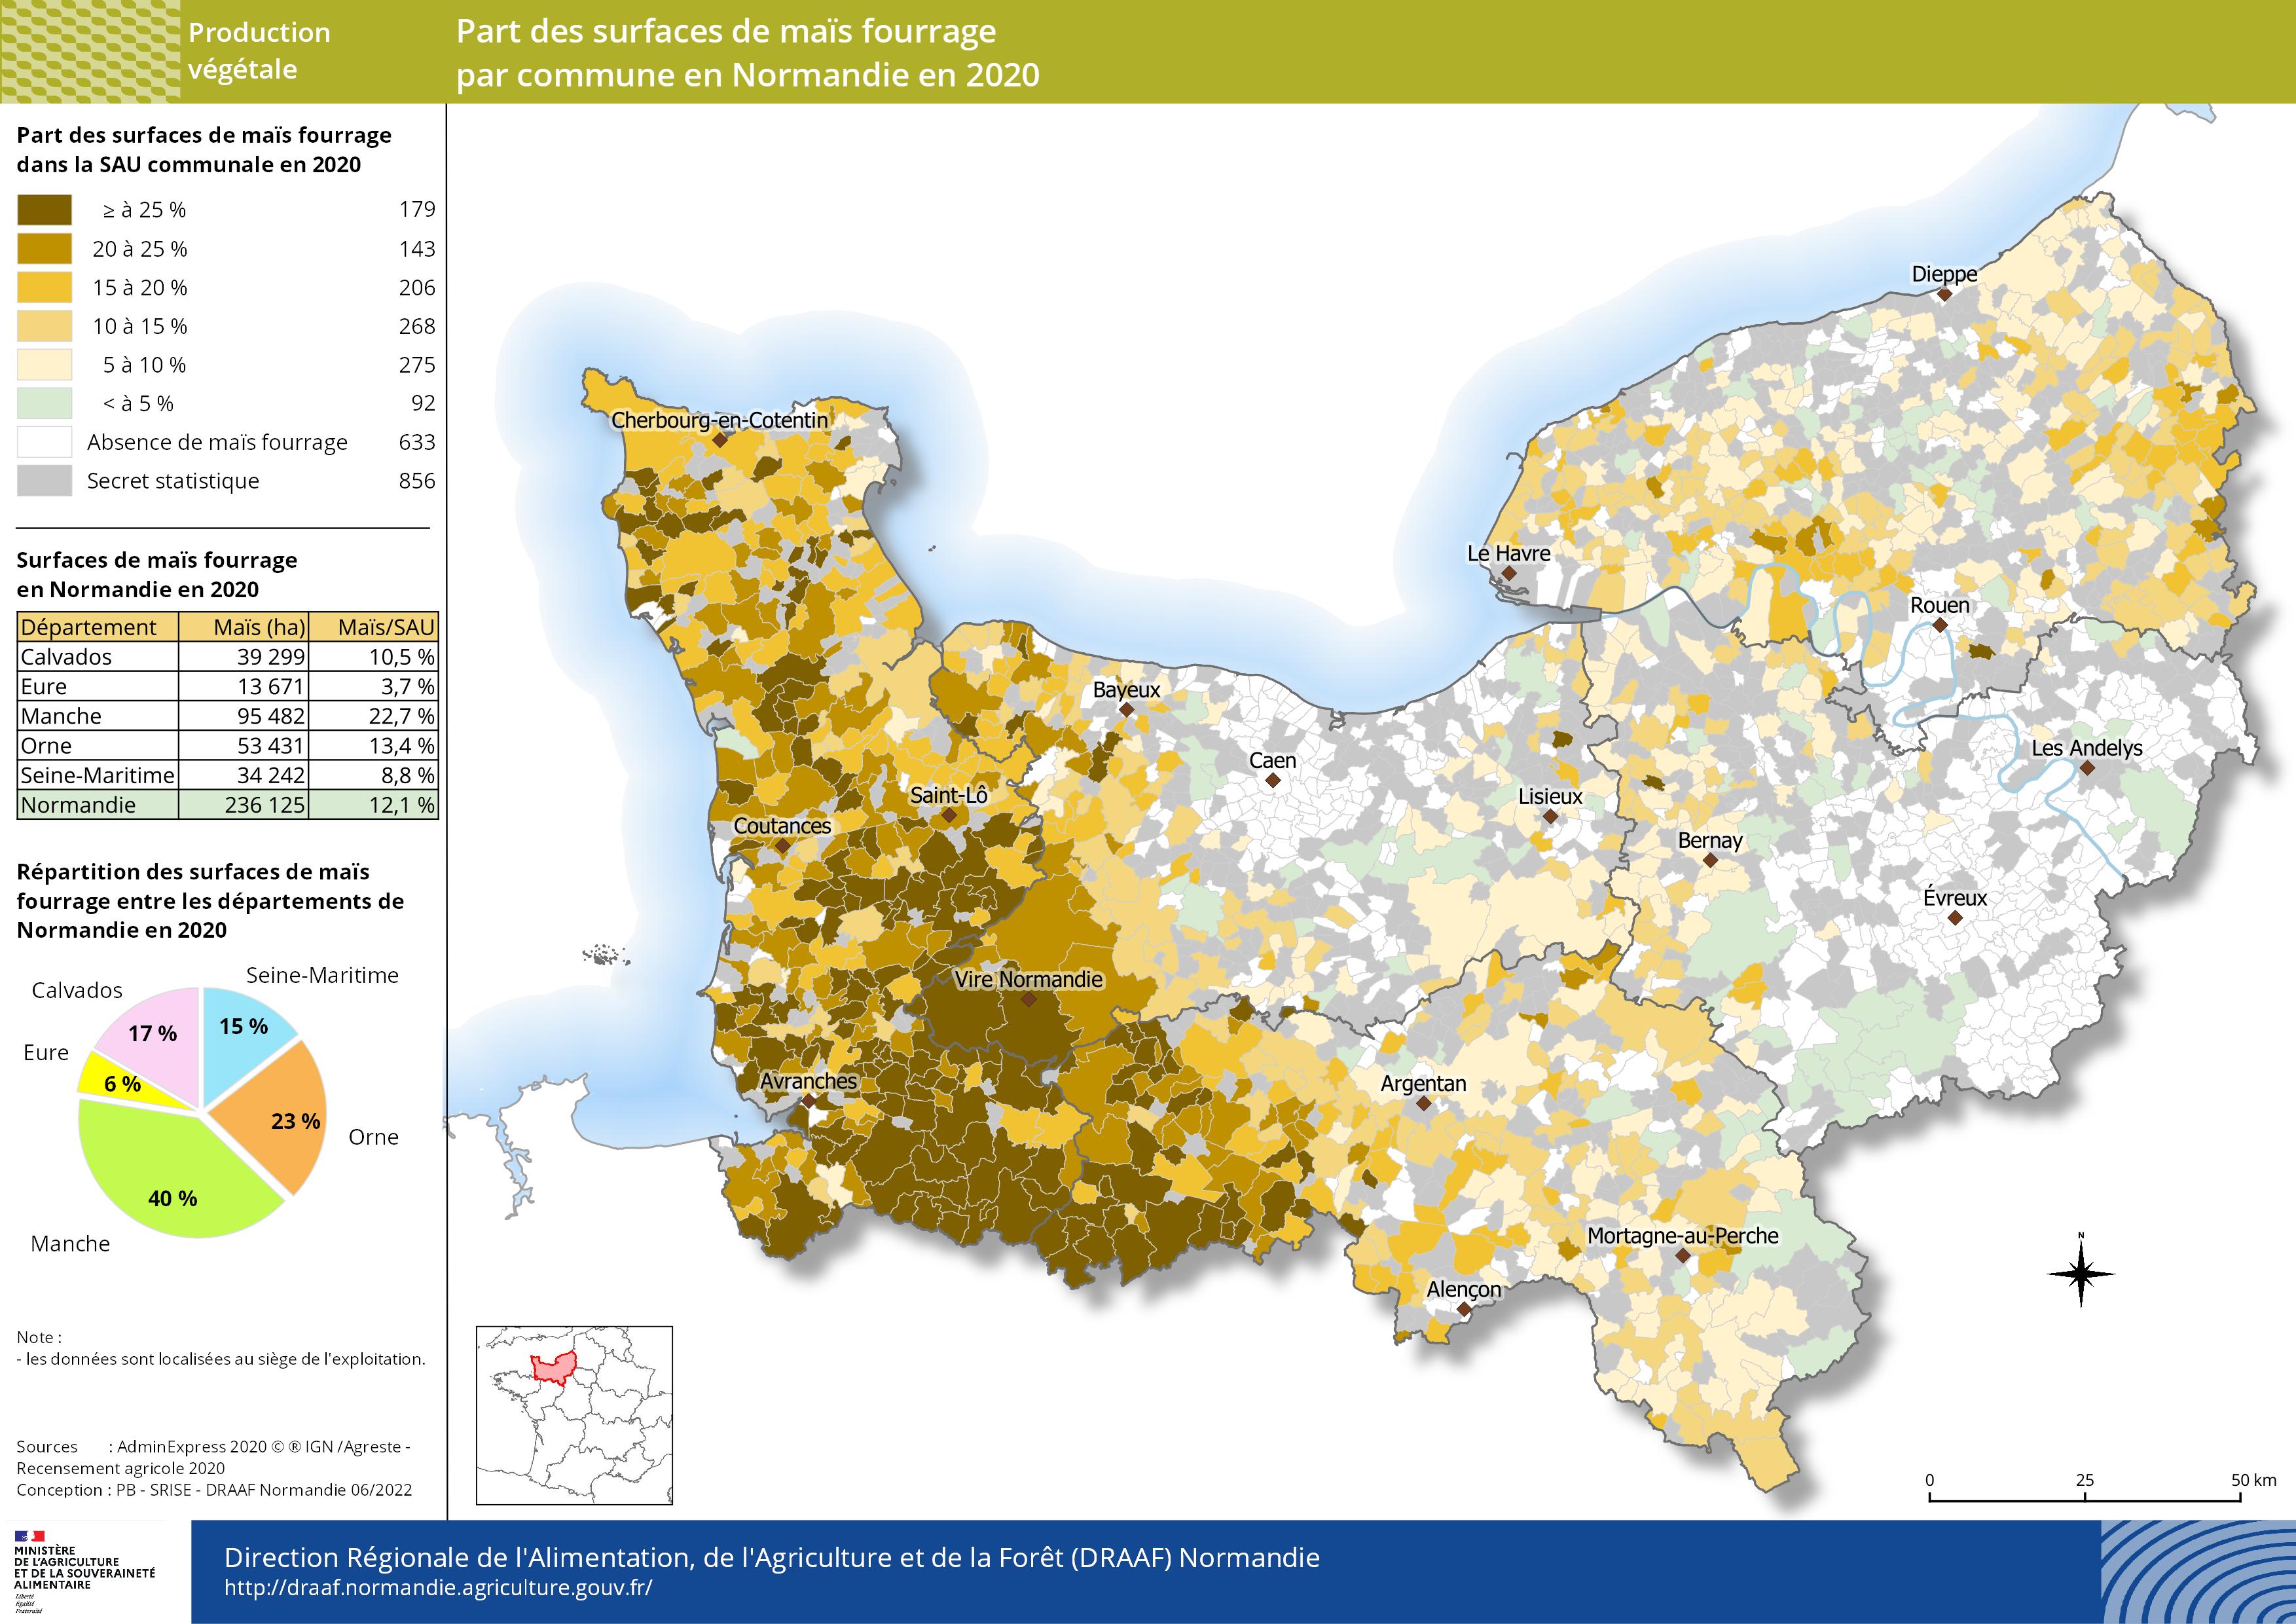 carte représentant la part des surfaces de maïs fourrage par commune en Normandie en 2020